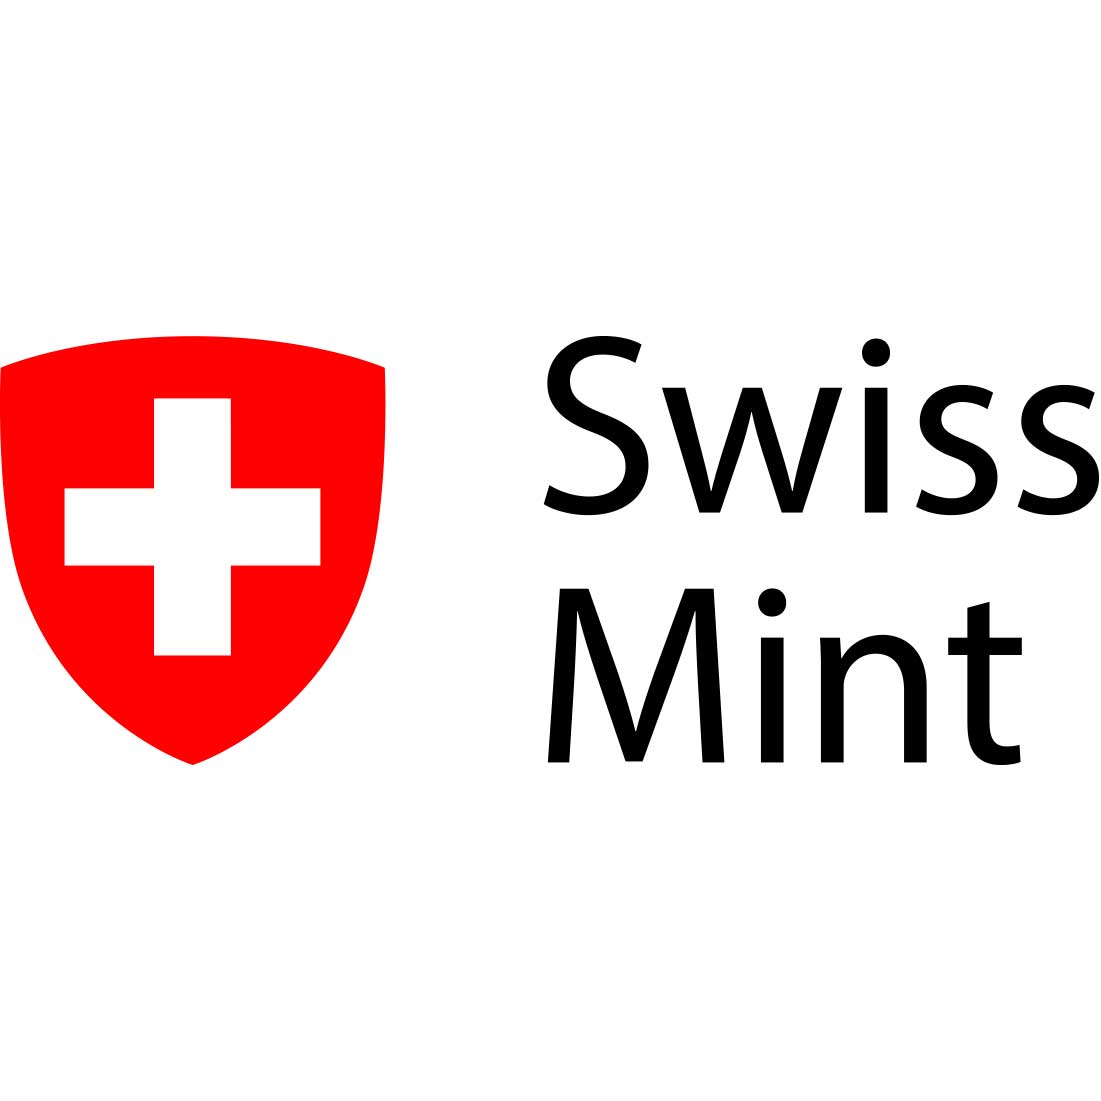 Swissmint